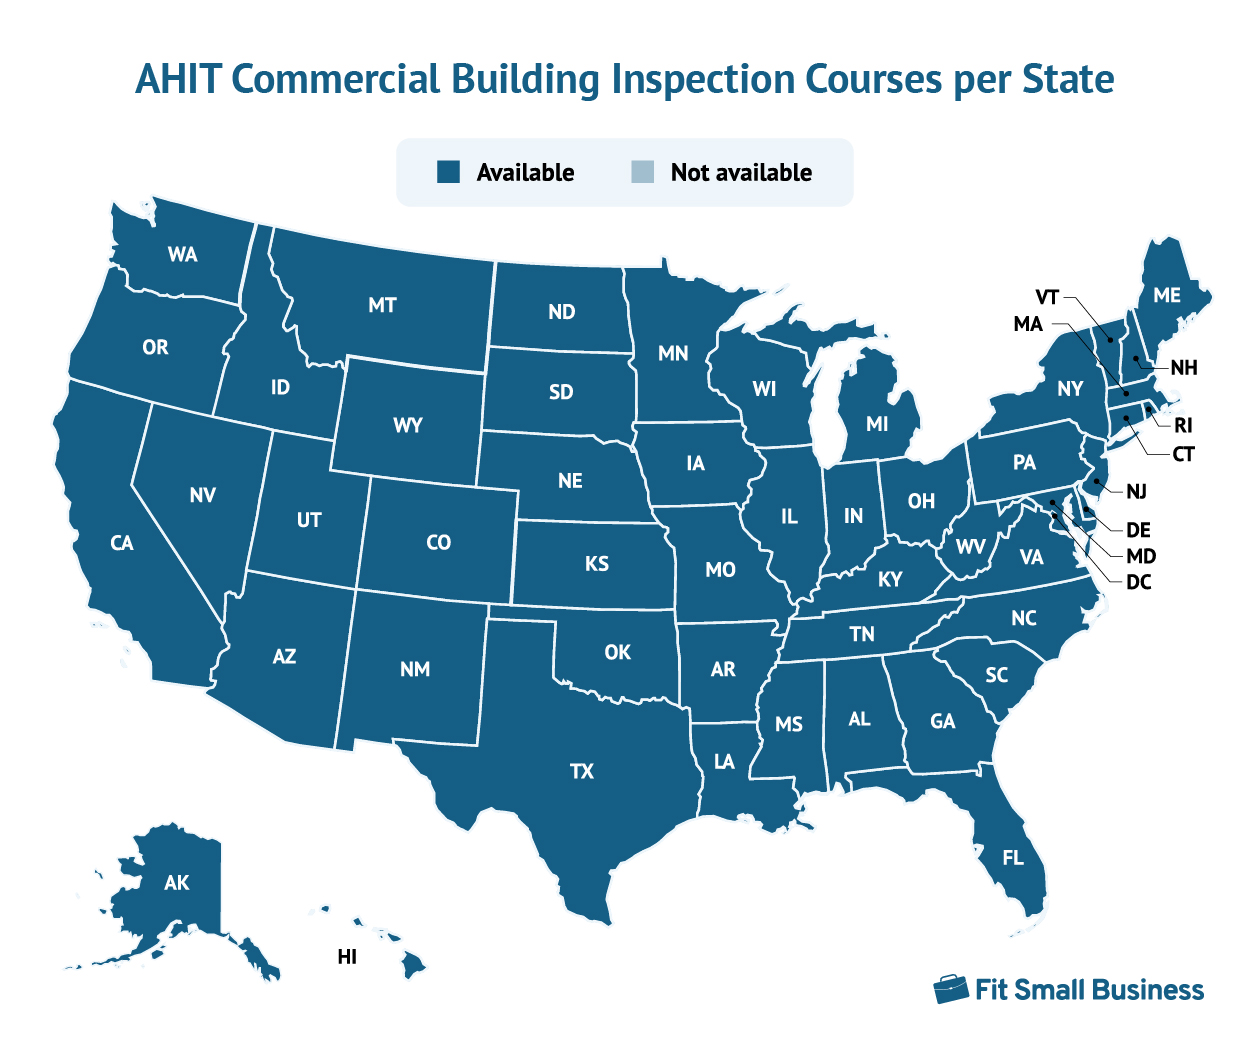 地图显示每个州的AHIT商业建筑检验课程。